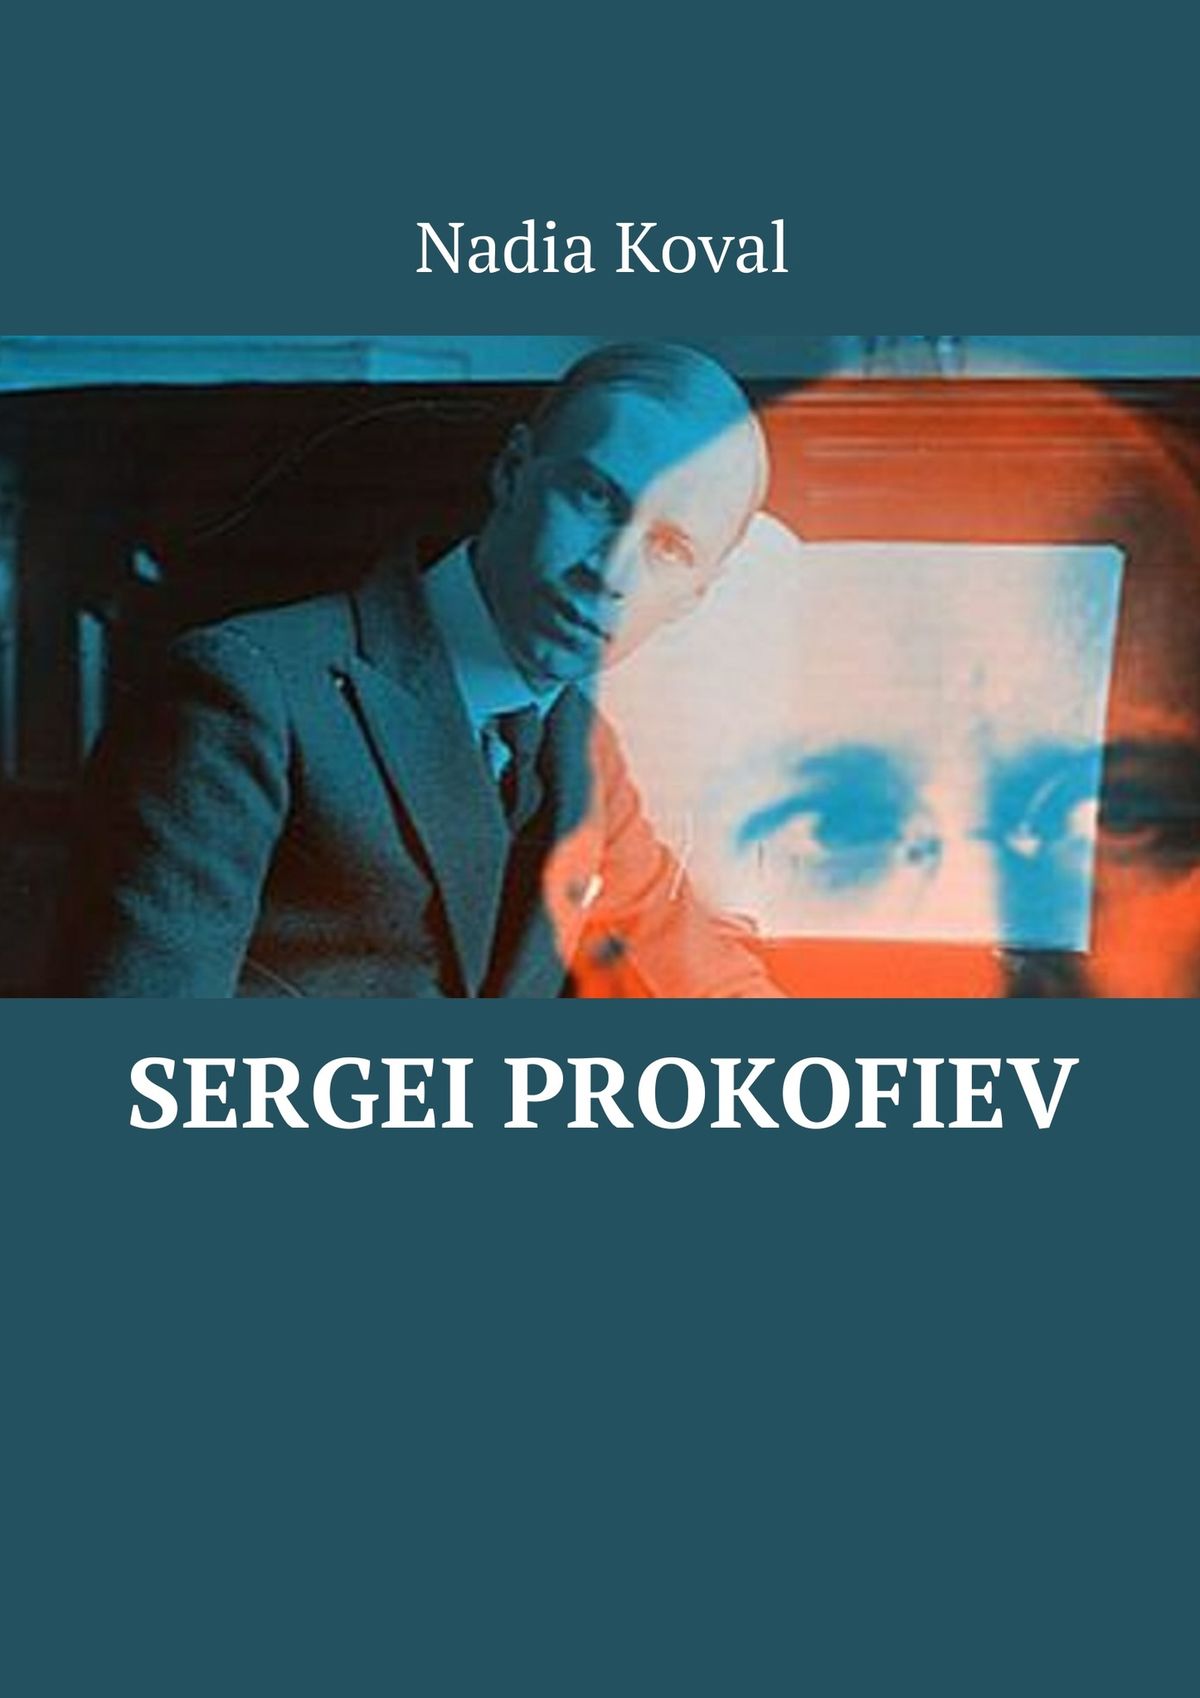 Книга Sergei Prokofiev из серии , созданная Nadia Koval, может относится к жанру Биографии и Мемуары. Стоимость электронной книги Sergei Prokofiev с идентификатором 20975024 составляет 488.00 руб.